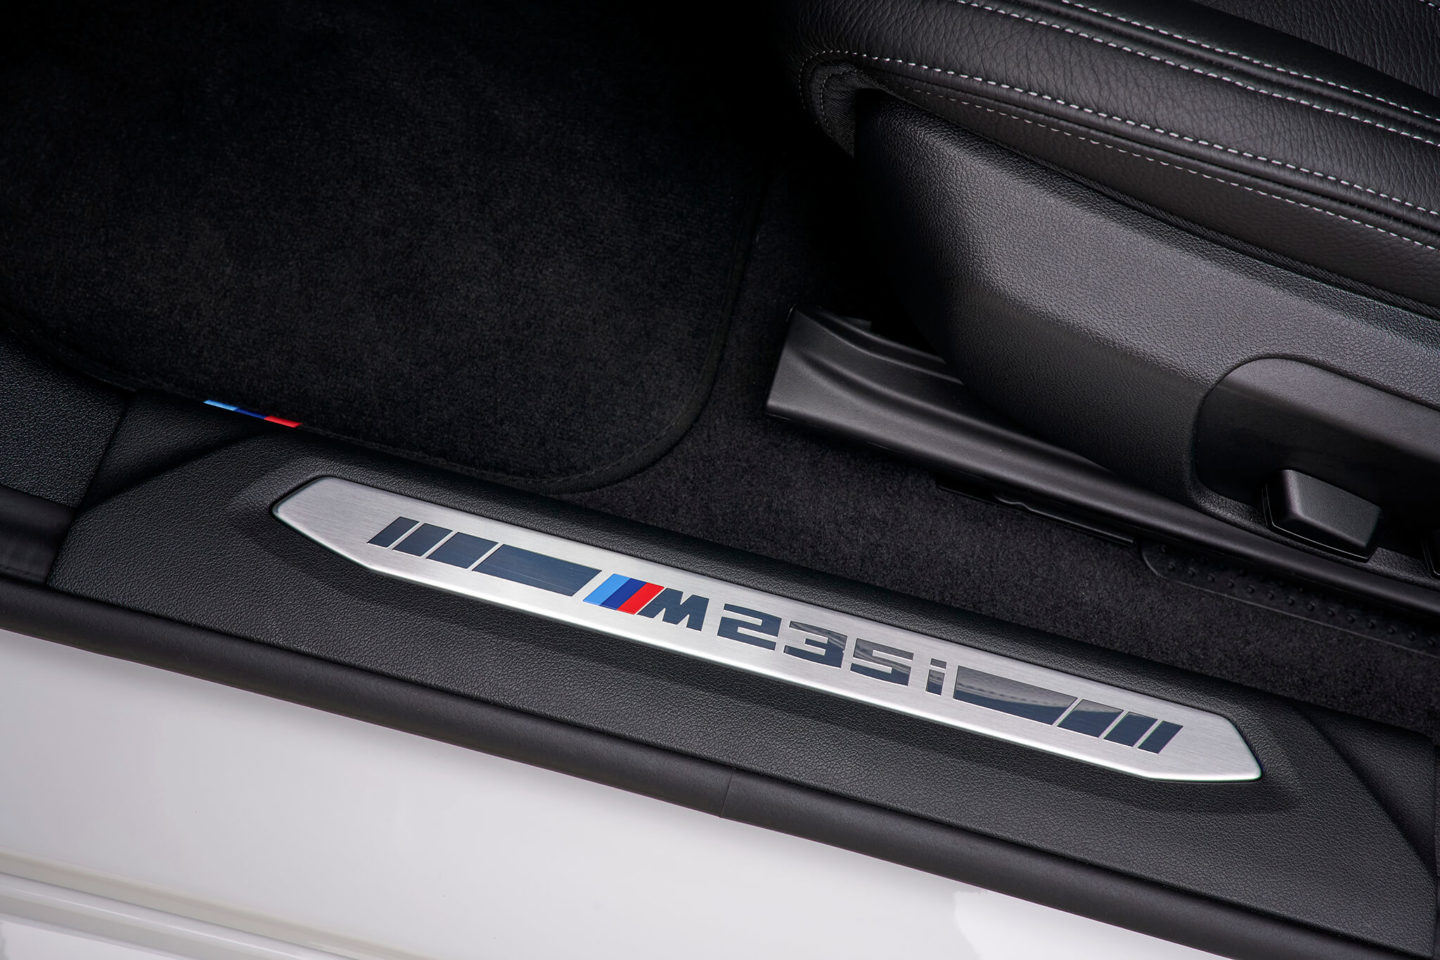 BMW Série 2 Gran Coupé